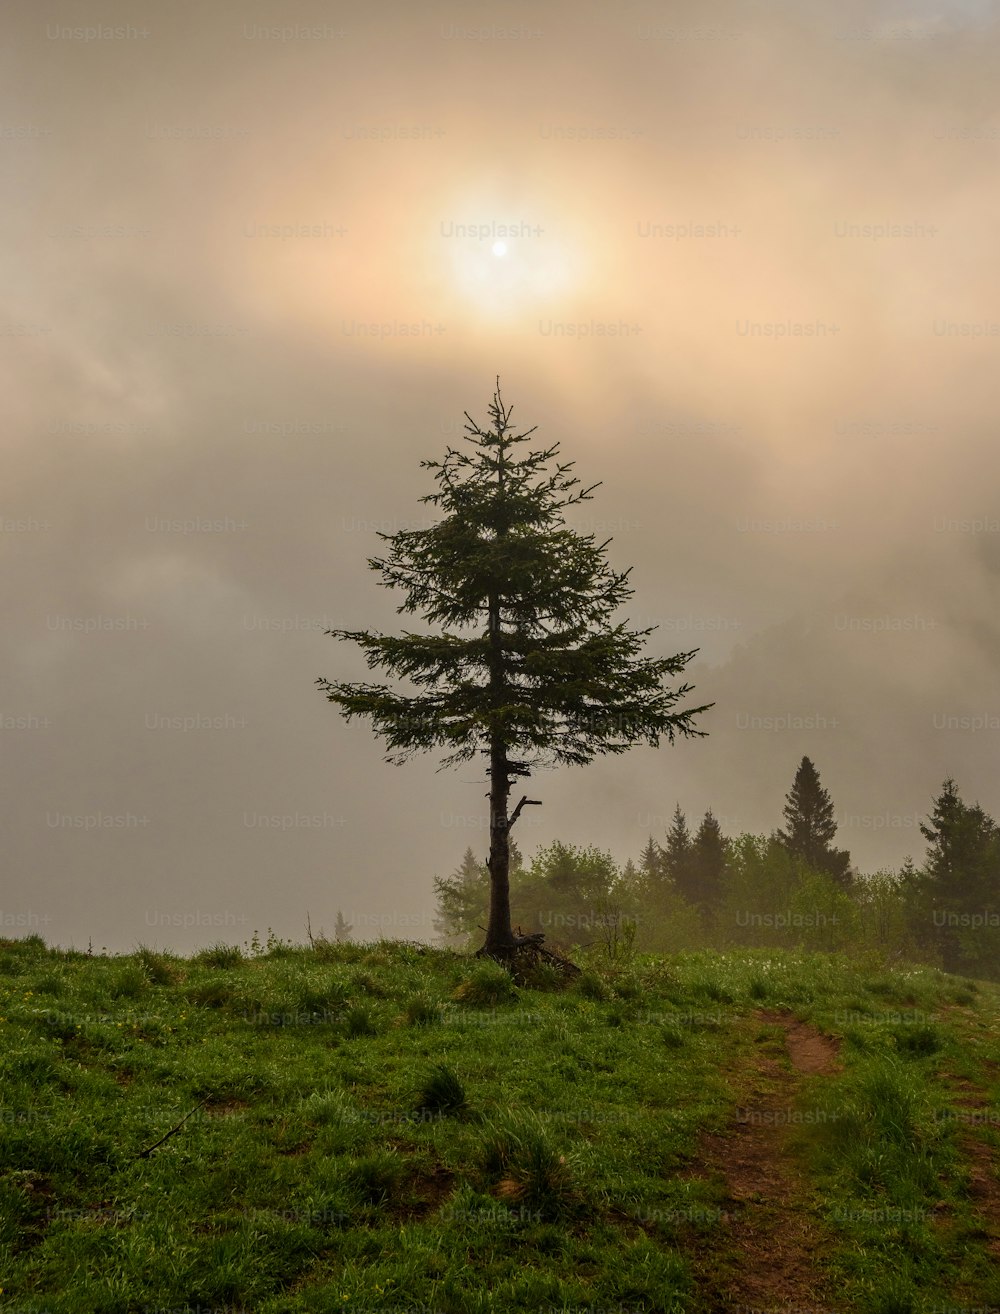 Ein einsamer Baum auf einem grasbewachsenen Hügel unter einem bewölkten Himmel